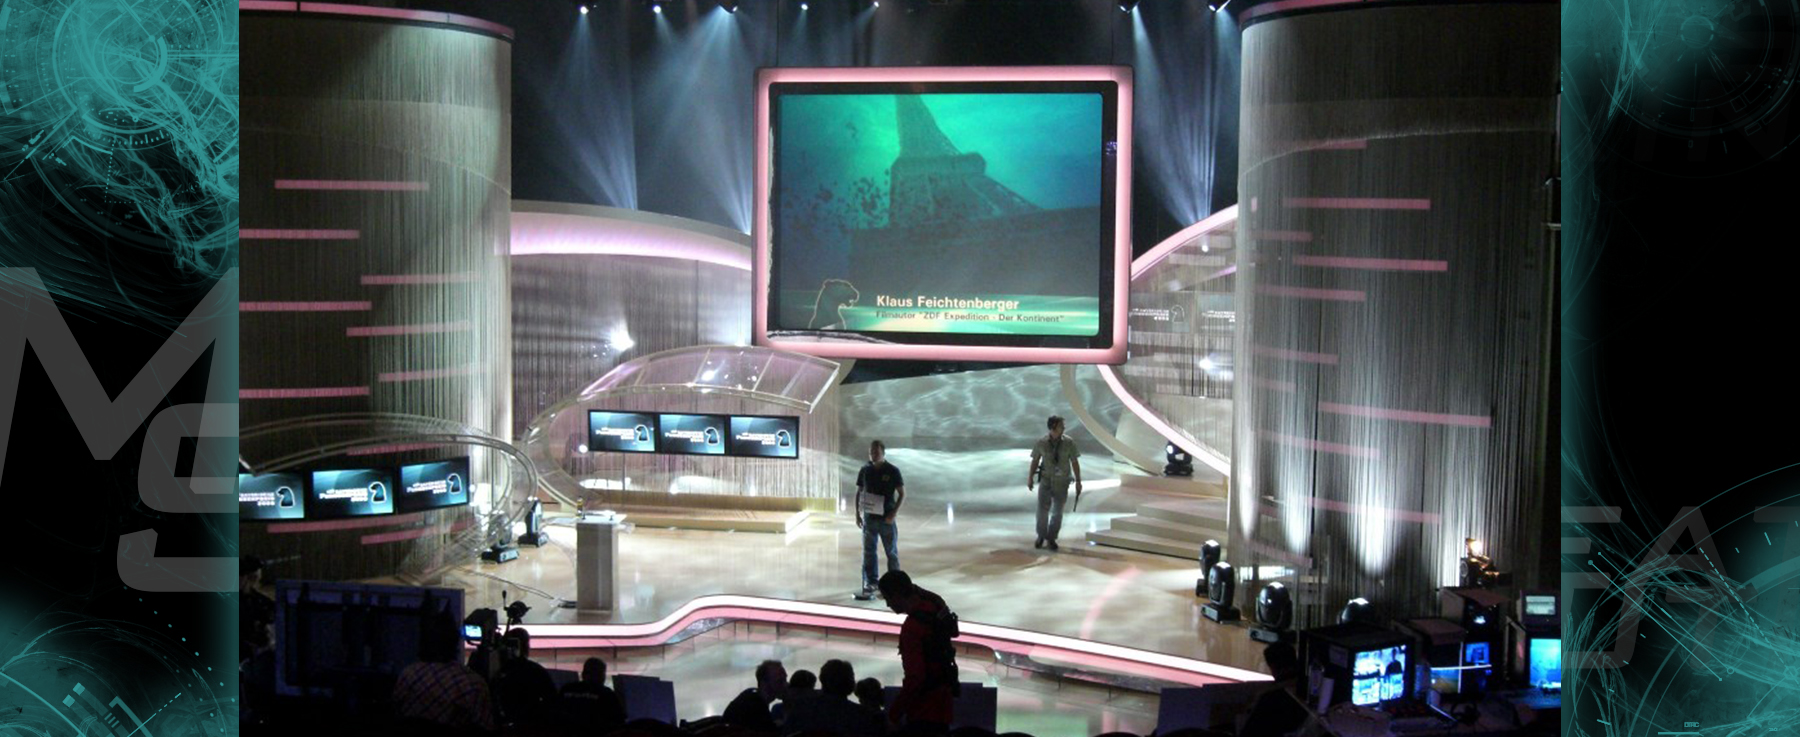 Bavarian TV Award 2006